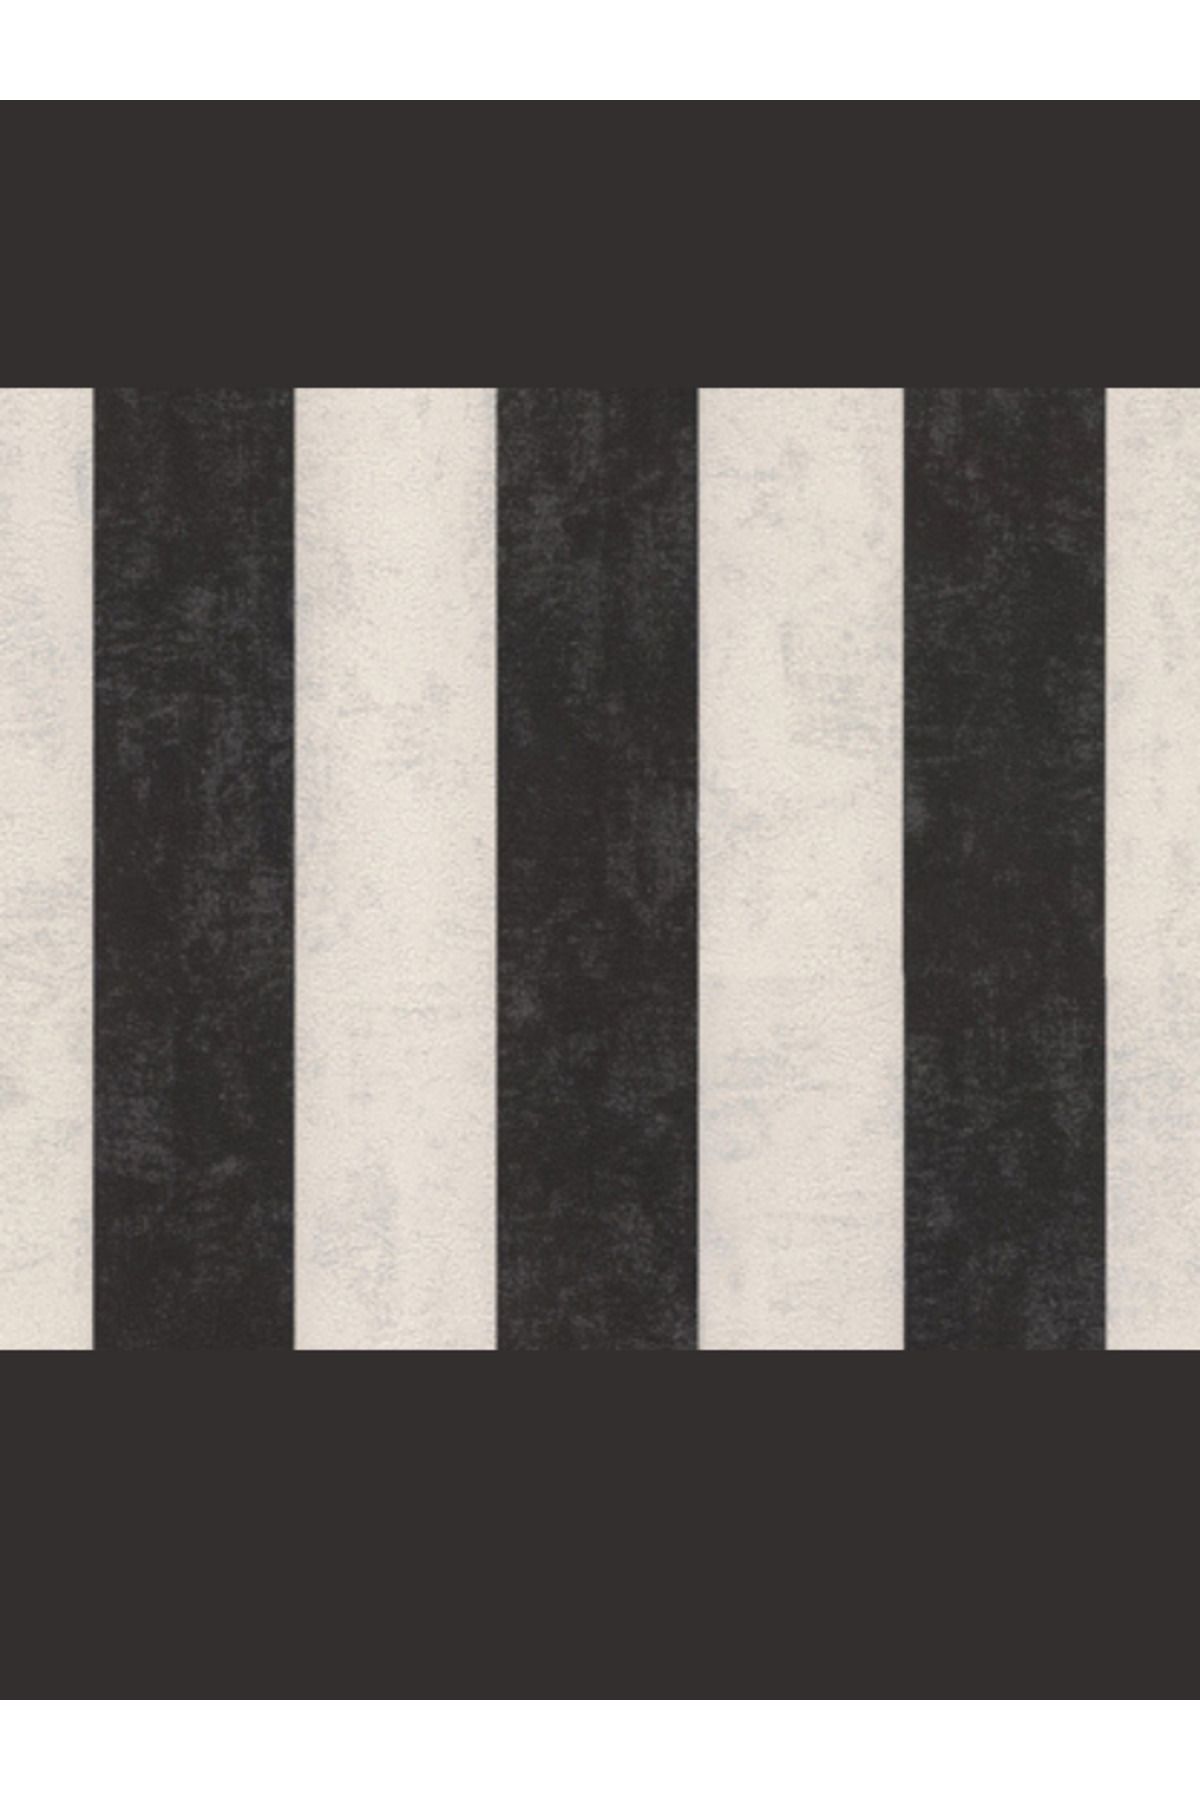 Decowall Siyah-Beyaz Çizgili Duvar Kağıdı 5002-04 RETRO DK